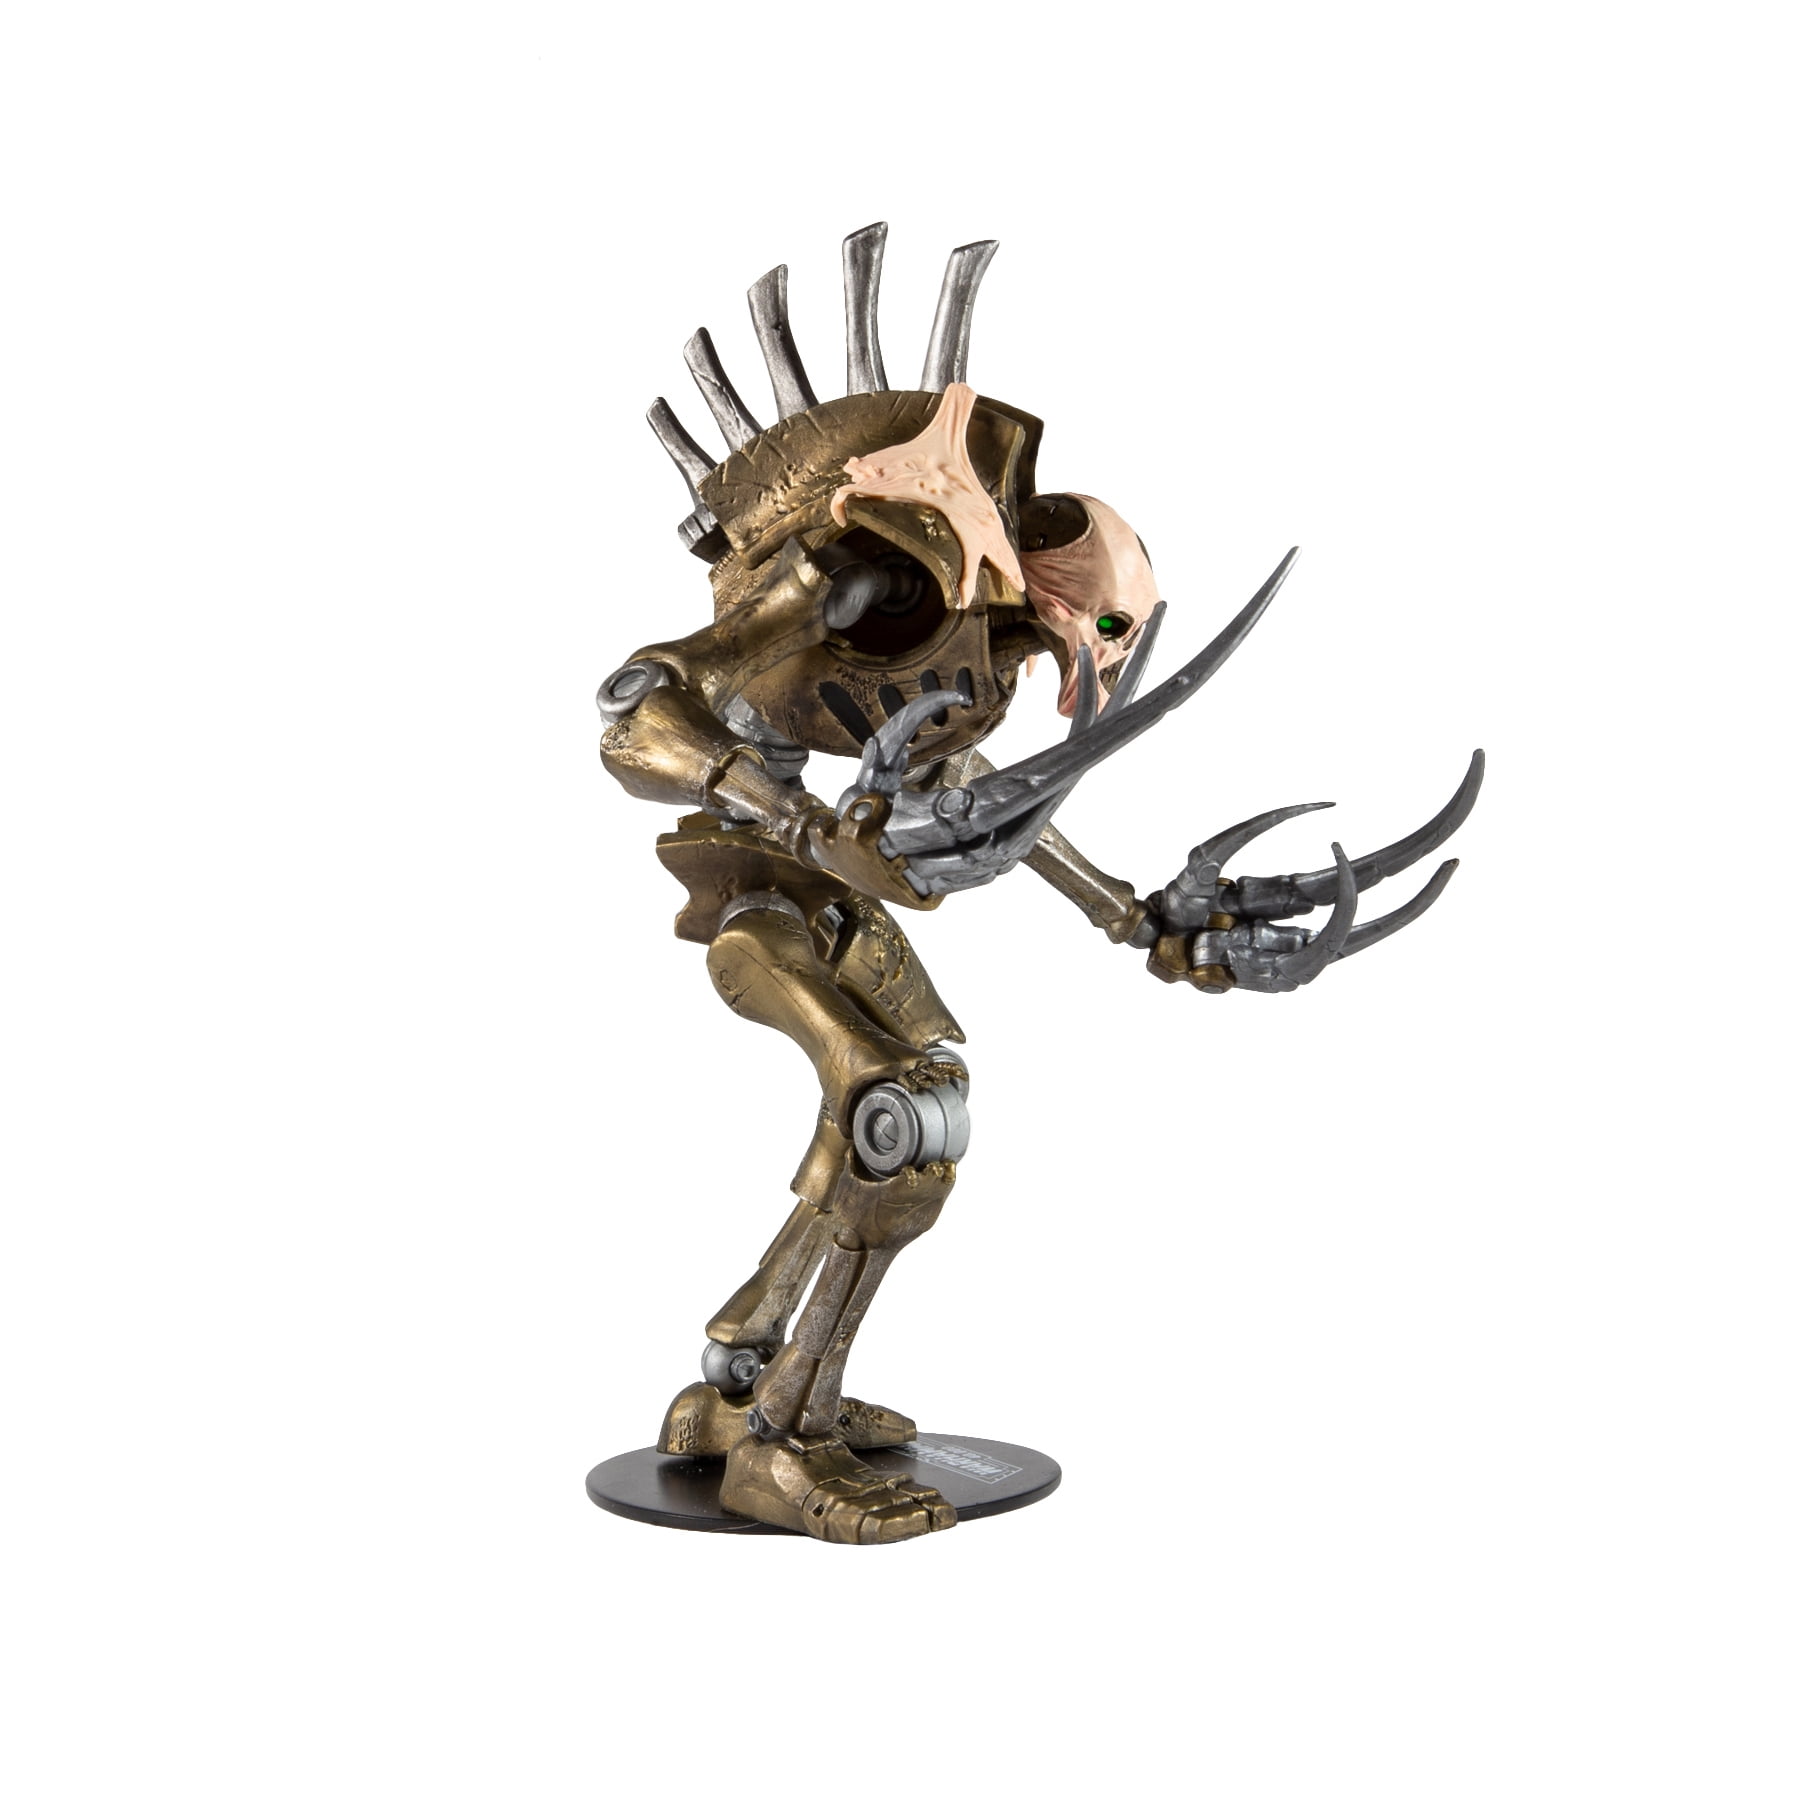 Warhammer 40k figurine Necron Flayed One 18 cm